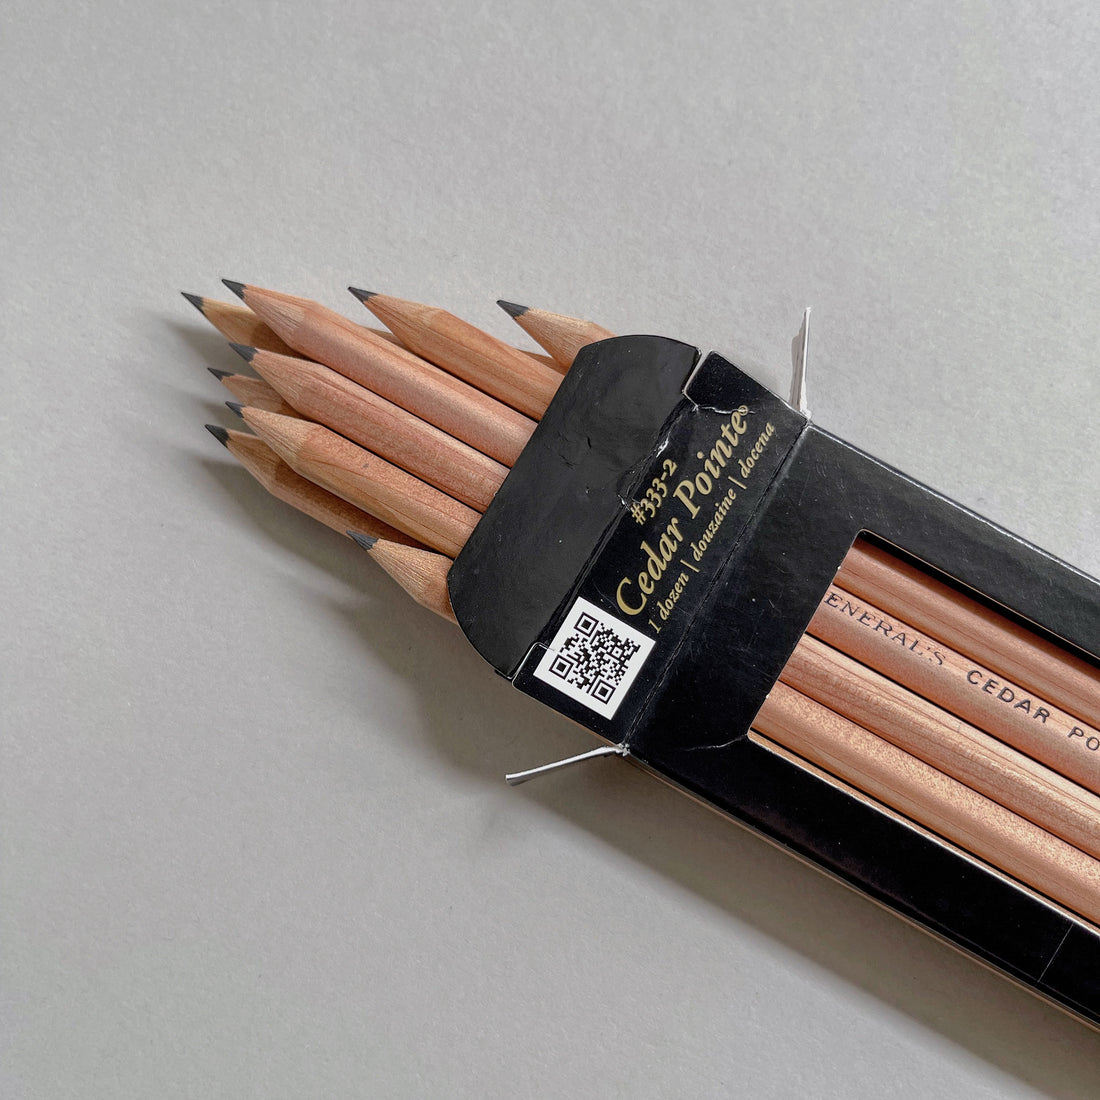 General's Cedar Pointe Pencils